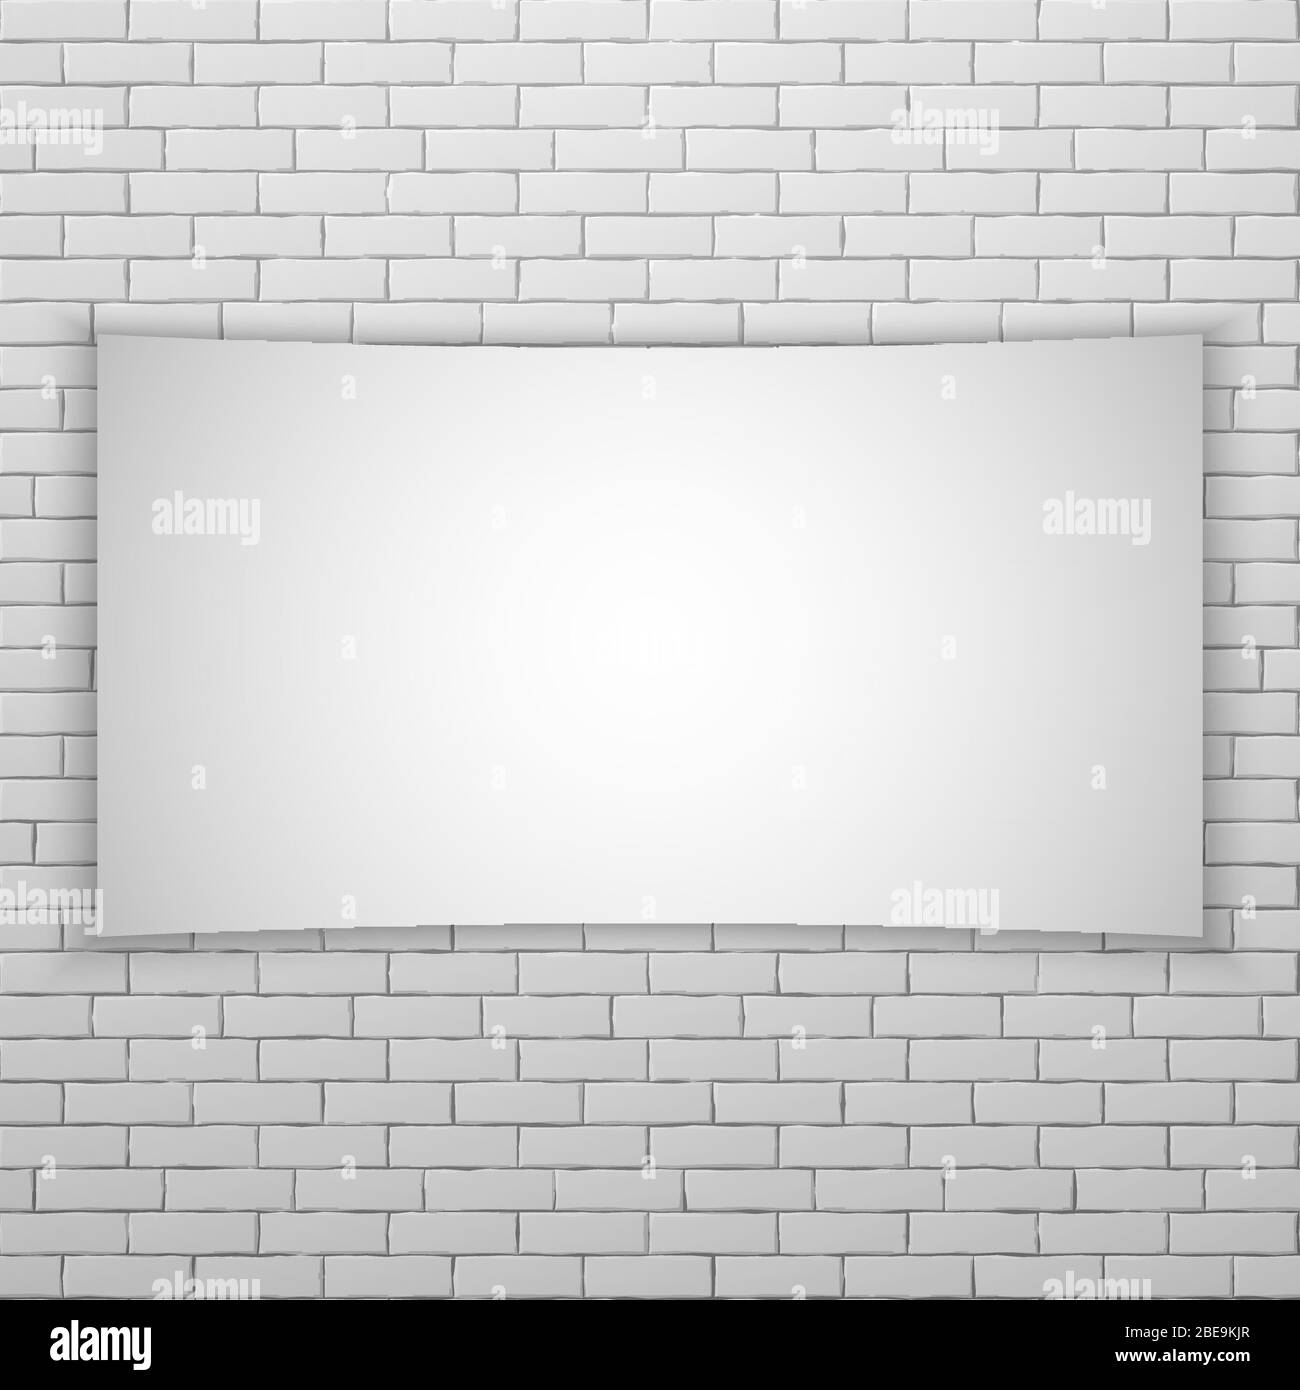 Schermo o banner bianco su parete di mattoni bianchi. Modello poster. Illustrazione vettoriale Illustrazione Vettoriale